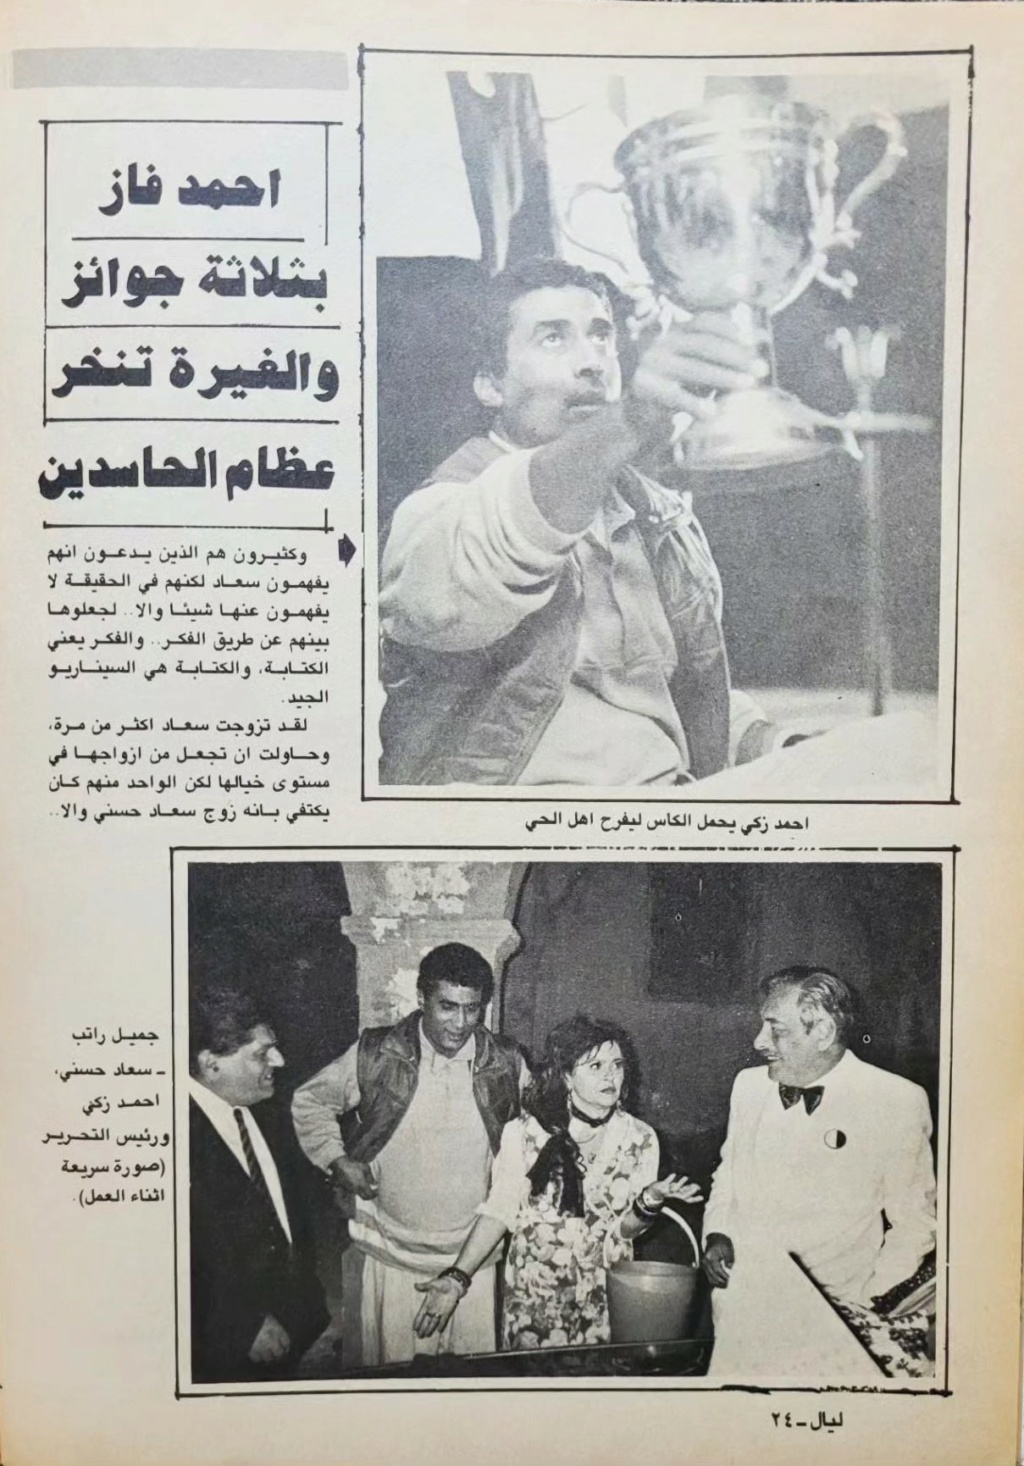 سهرة - مقال صحفي : سهرة مع سعاد حسني 1988 م 326